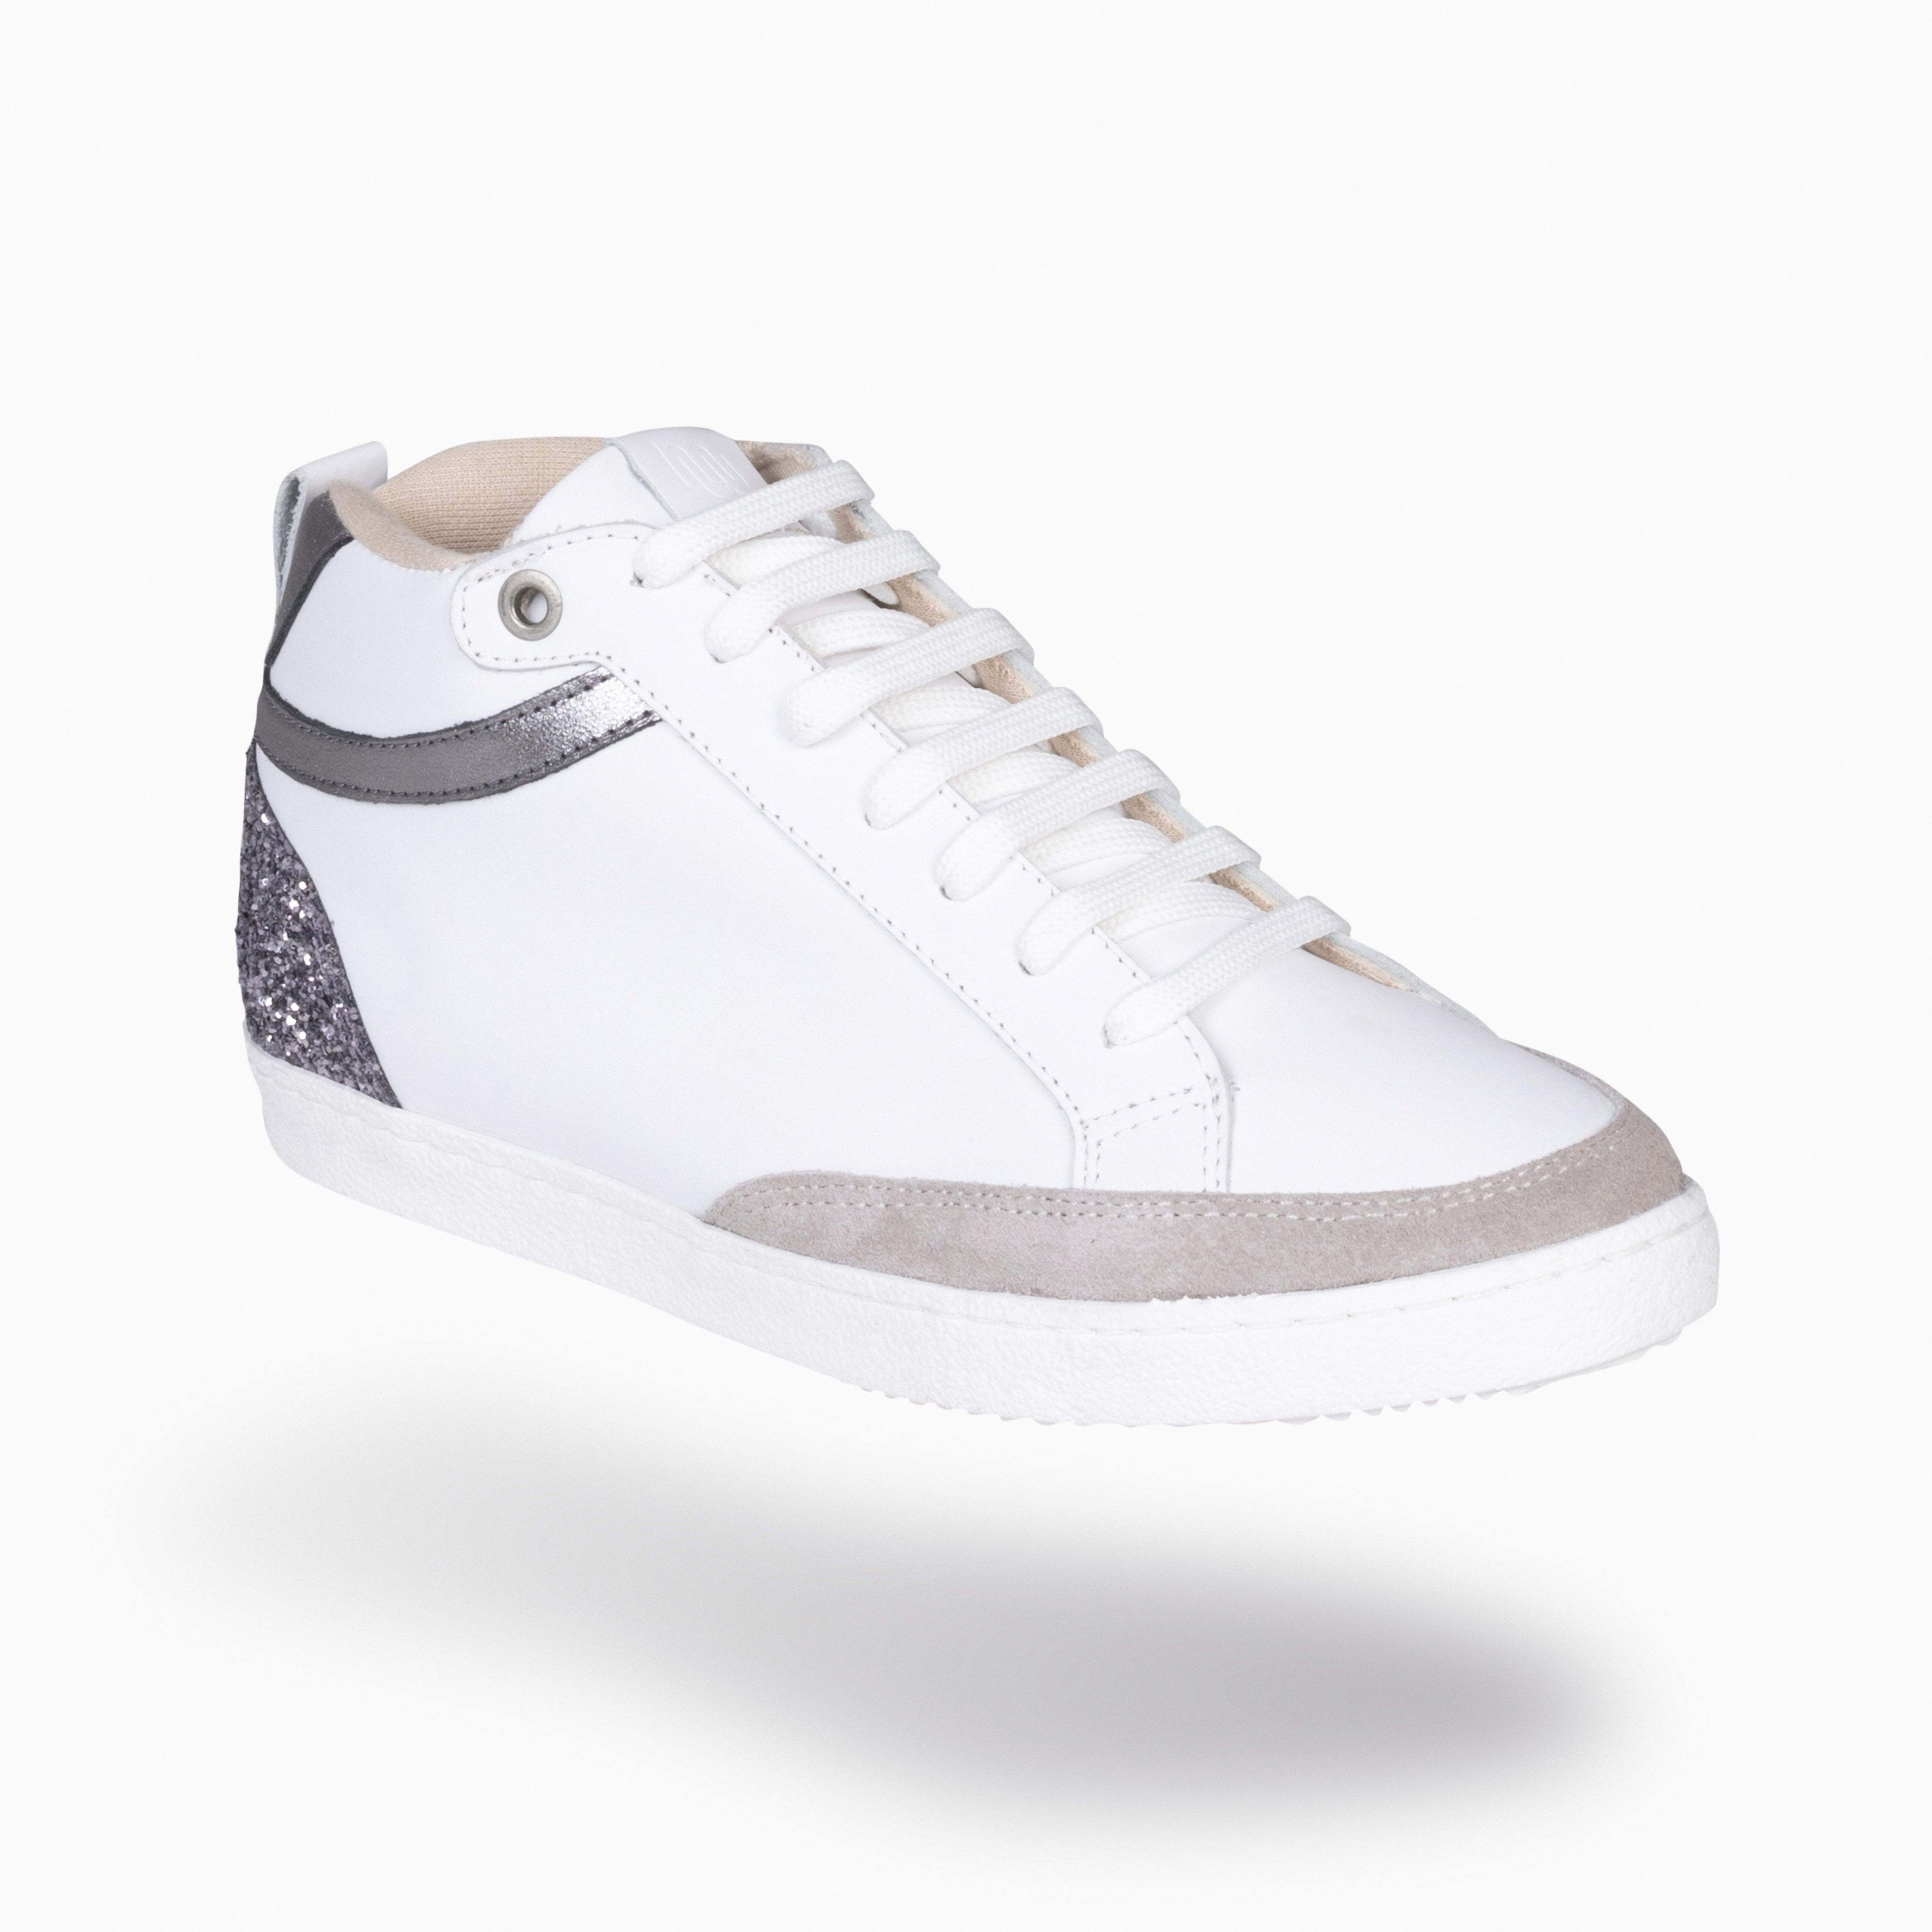 RACHEL – WHITE GLITTER Women wedge sneakers 